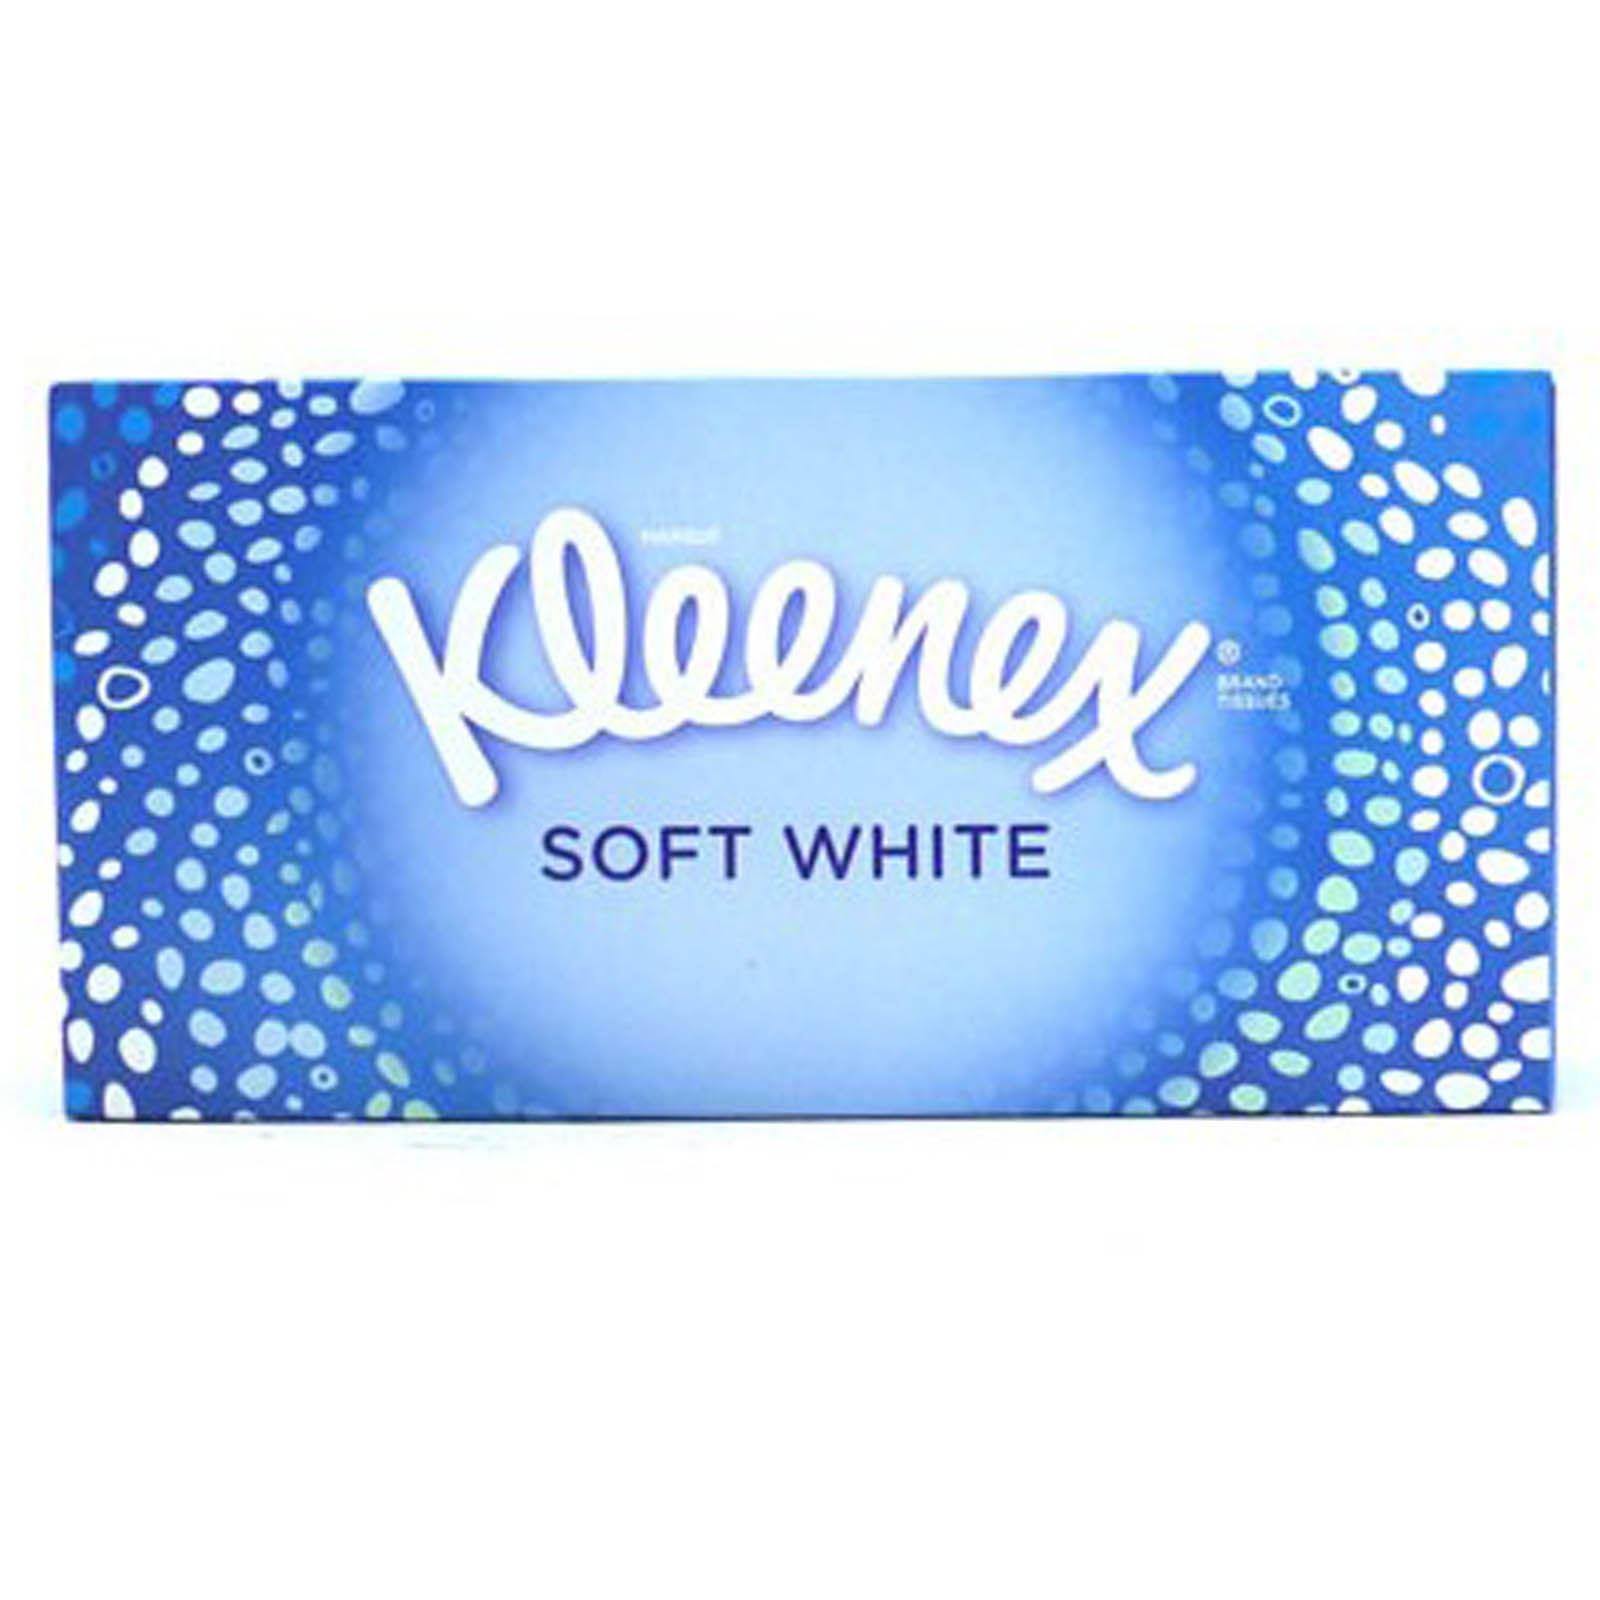 Kleenex Box Tissues - Soft White, 70pcs